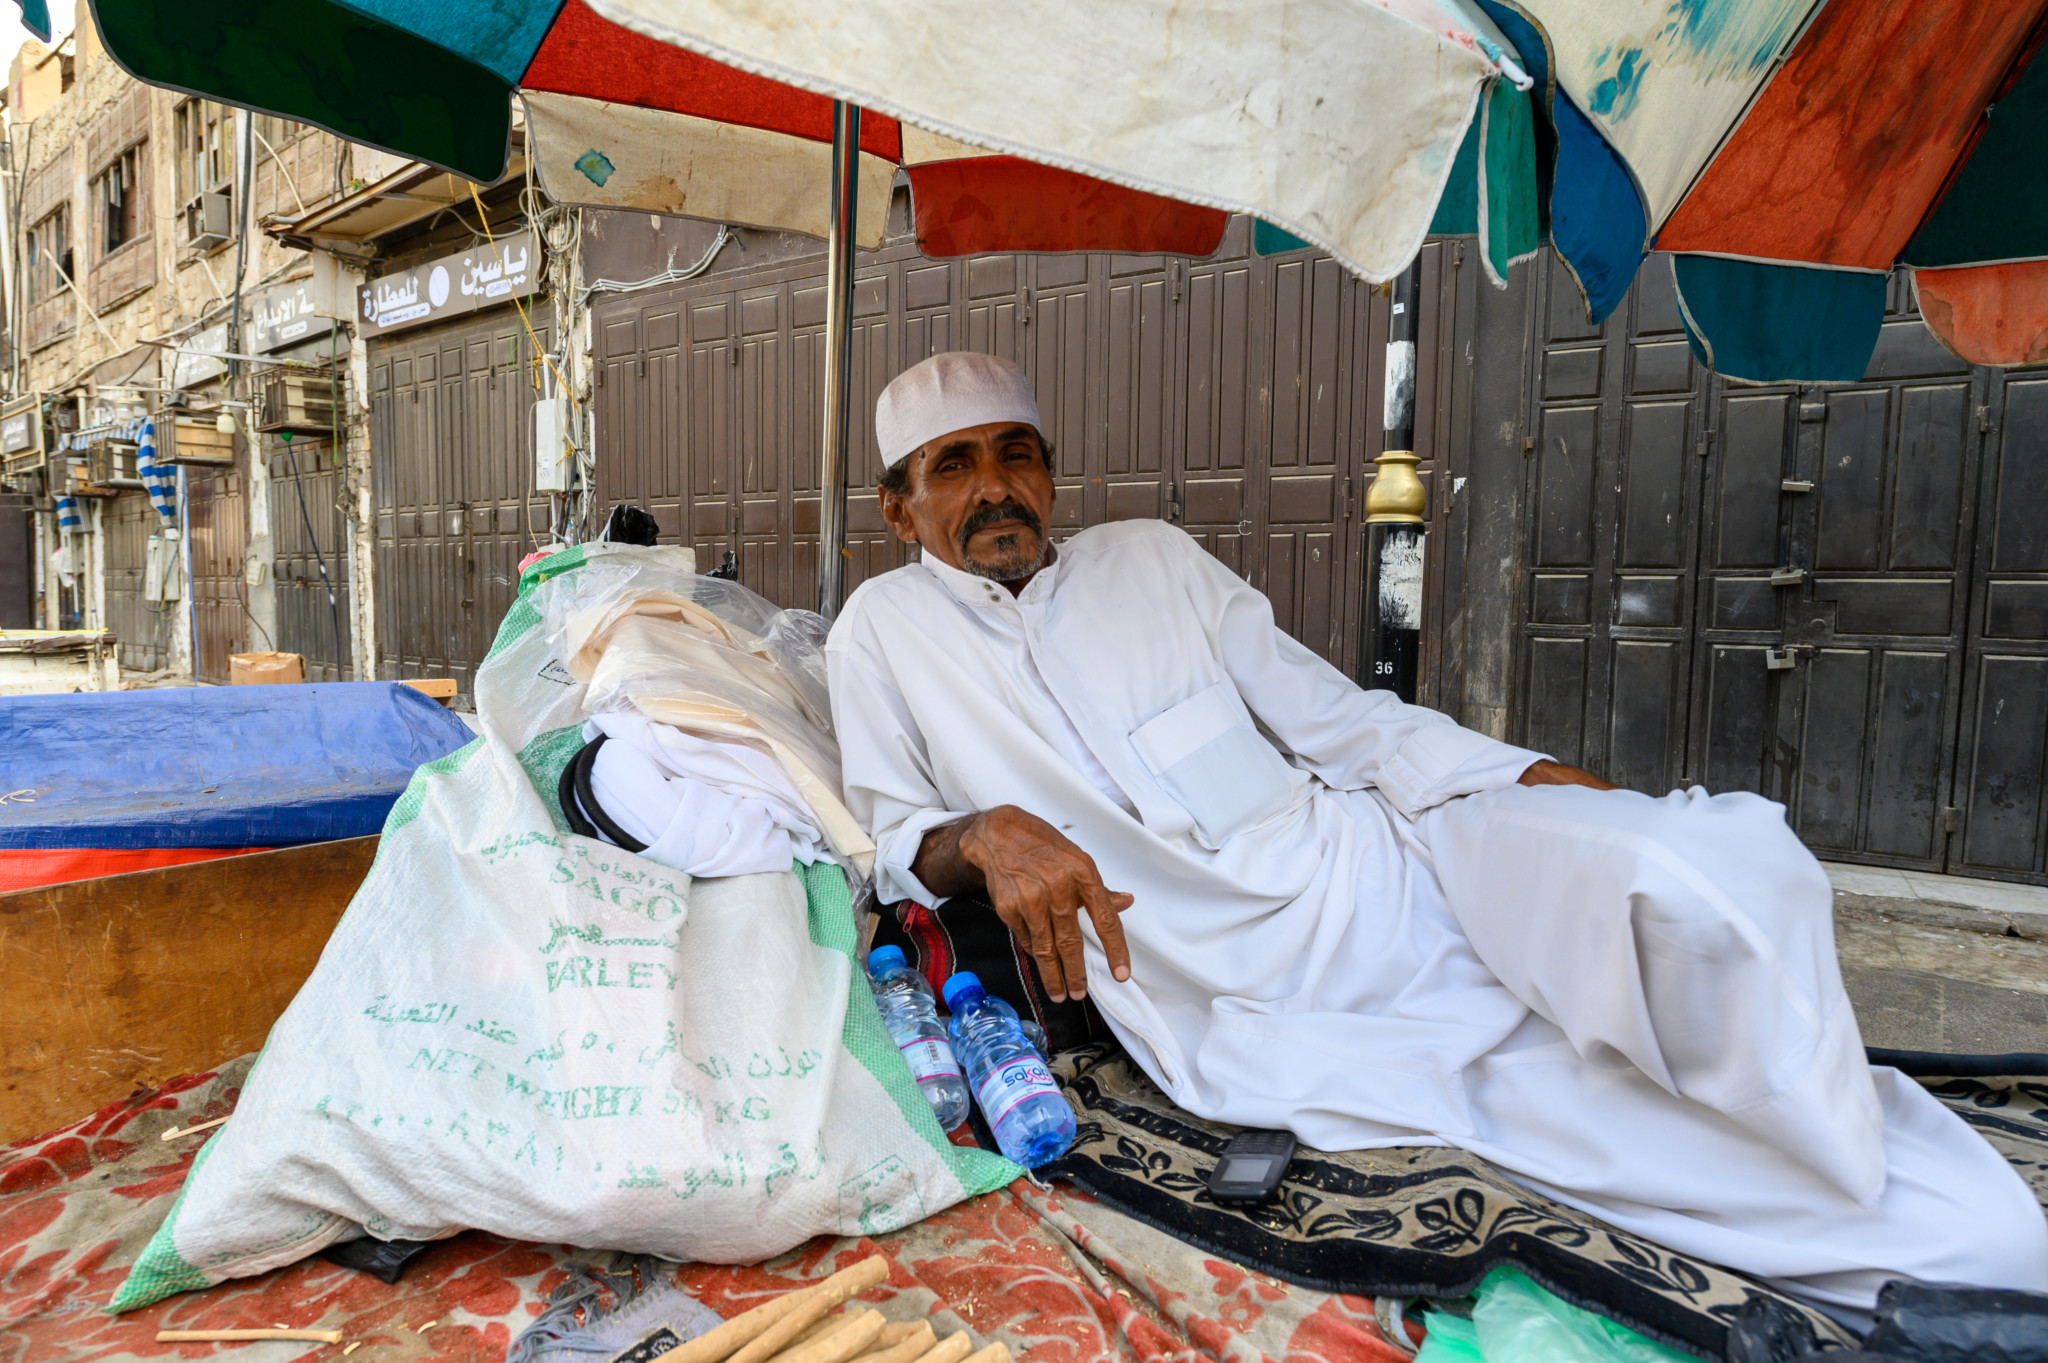 Verkäufer auf dem jemenitischen Markt in Jeddah